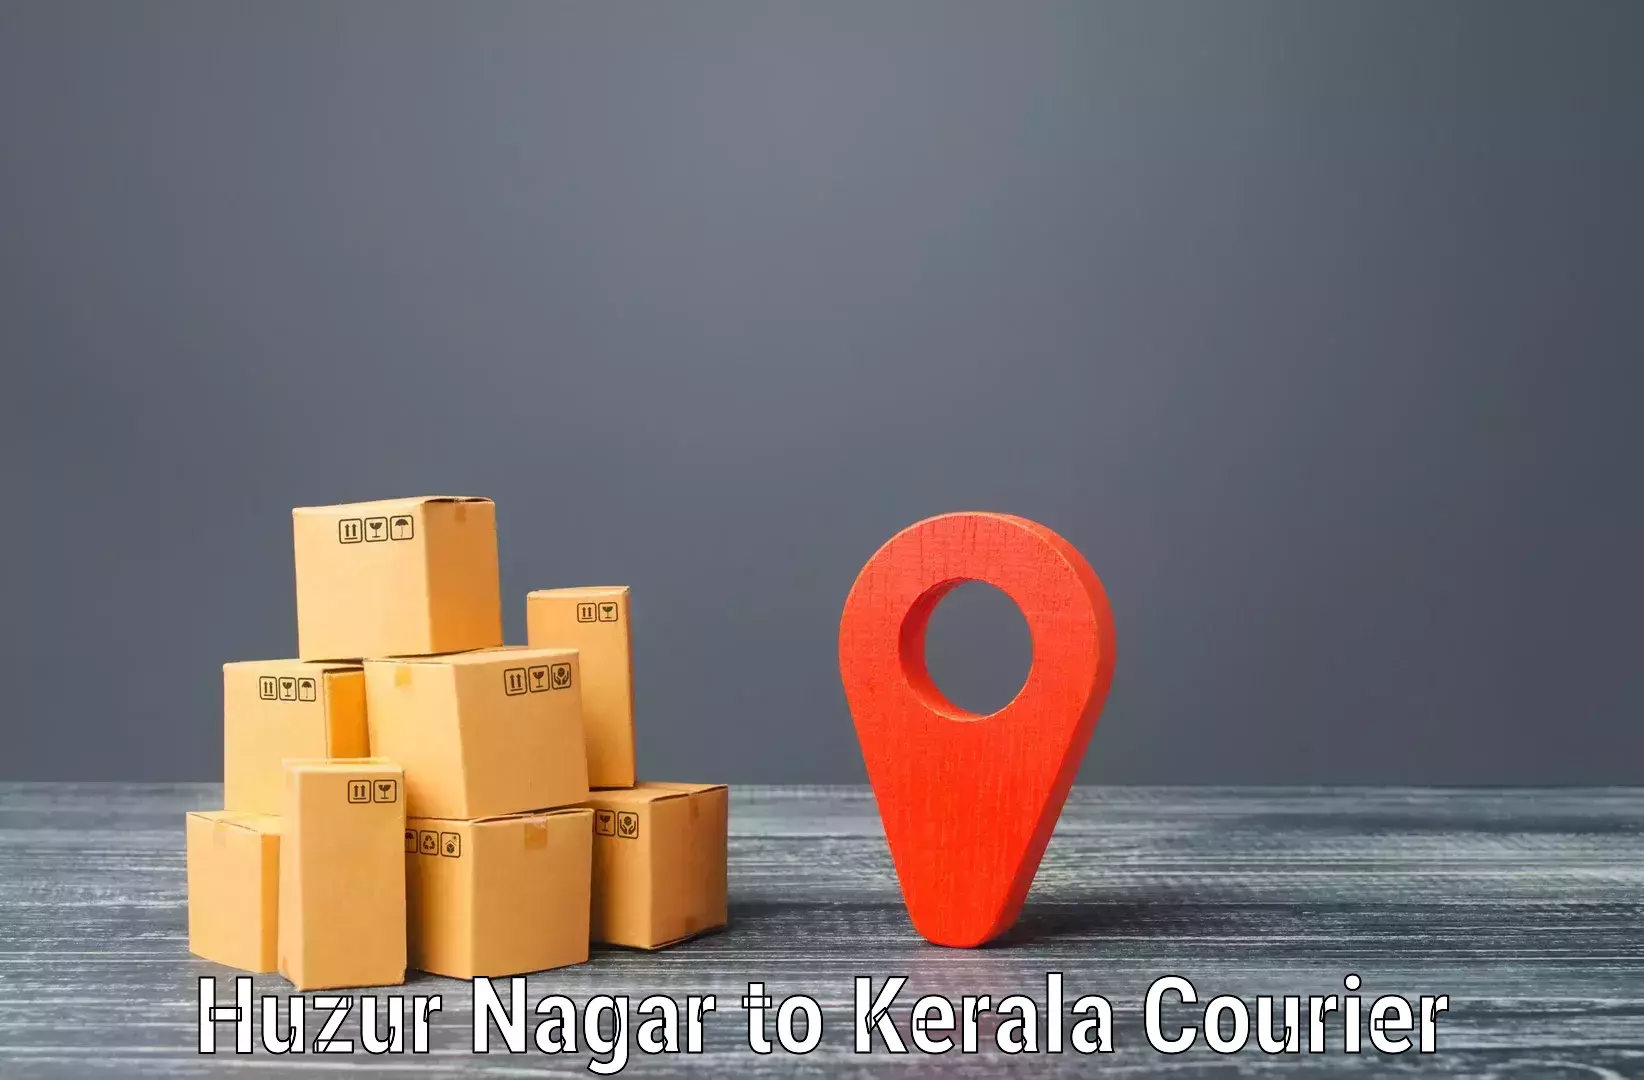 High-capacity shipping options Huzur Nagar to Kerala